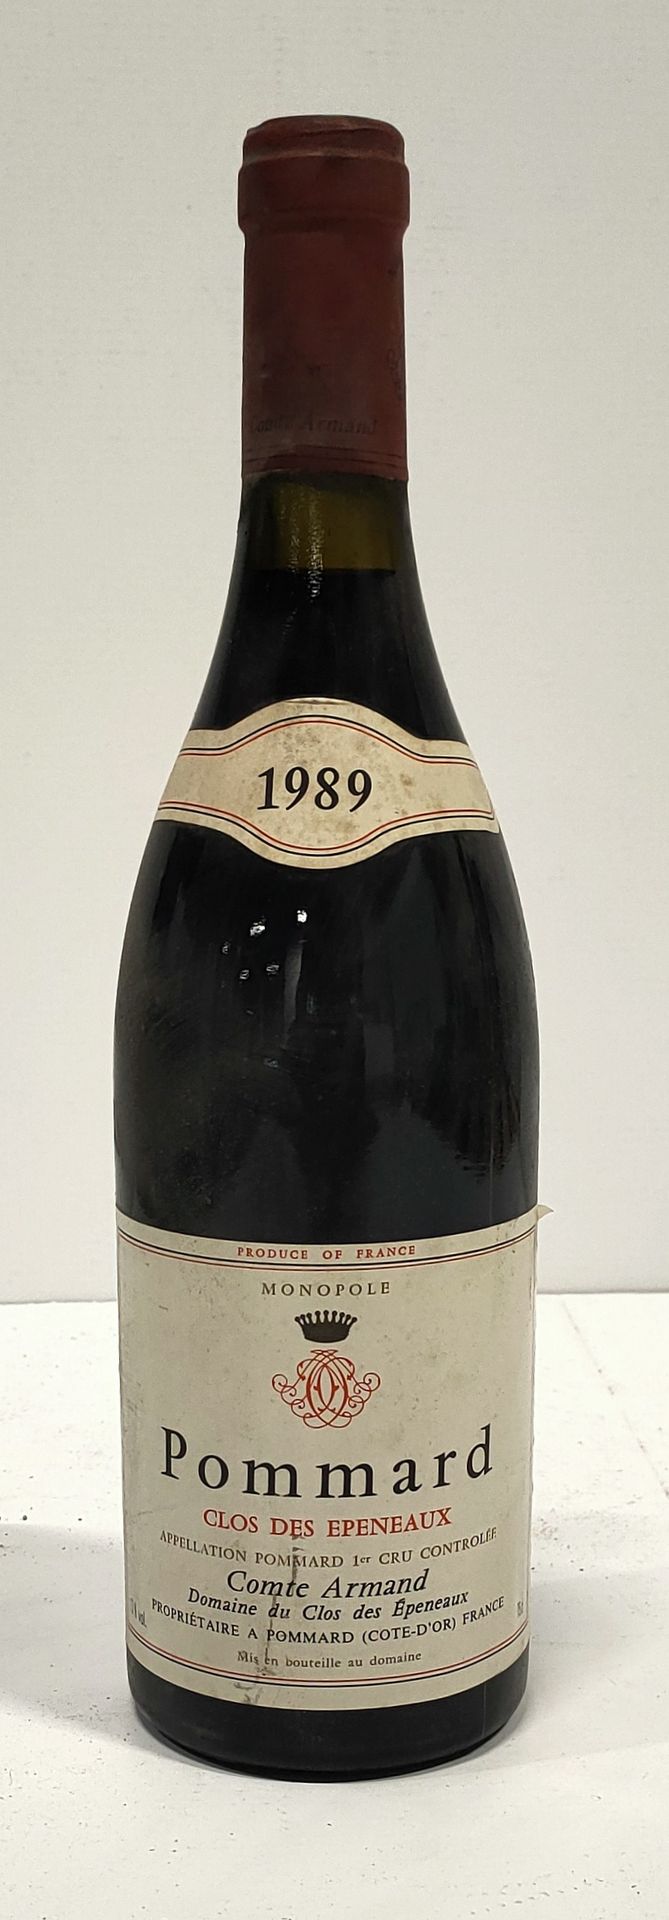 Null 1瓶

POMMARD 1er Cru " Clos des Epeneaux " - Count

阿尔芒

1989

标签略有污点。